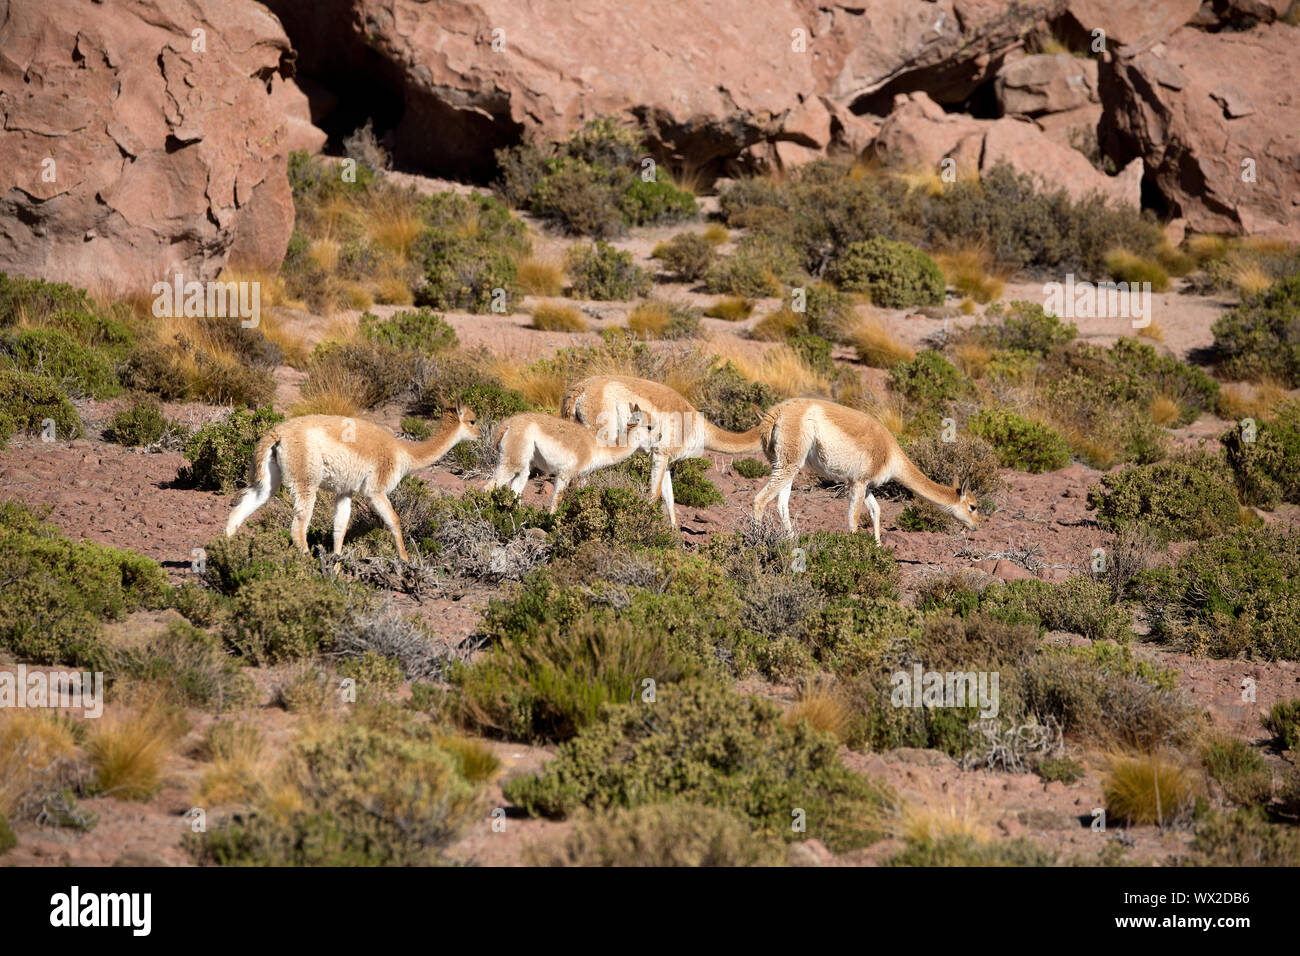 La recherche de nourriture dans les guanacos le désert d'Atacama au Chili Banque D'Images